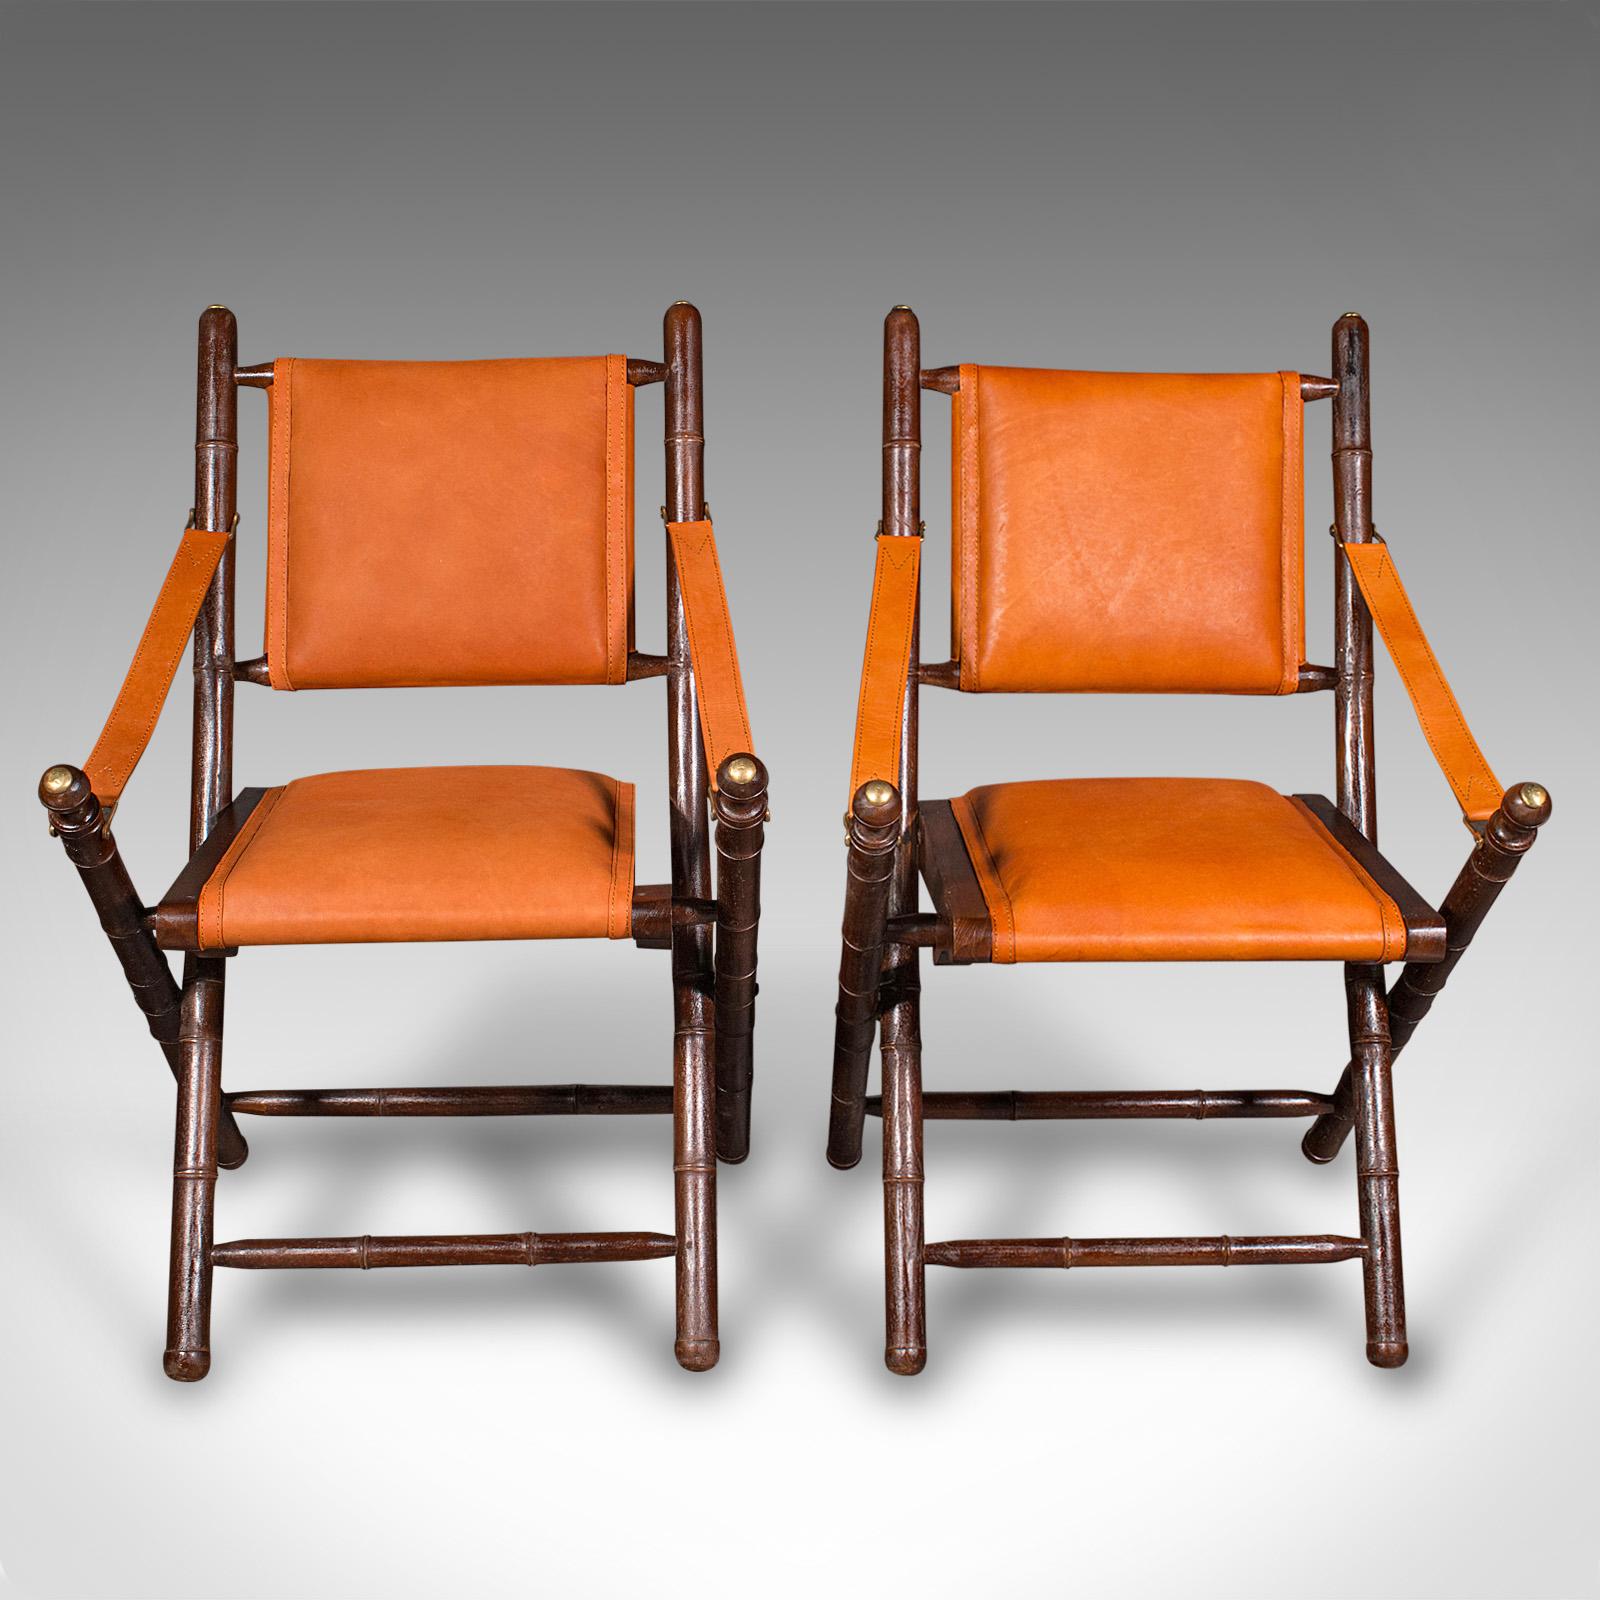 Il s'agit d'une paire de chaises d'orangerie contemporaines. Un siège de véranda ou de patio pliant en faux bambou et cuir de style colonial anglais.

Des chaises d'extérieur ou d'appoint vivantes et bien aménagées
Présenté en très bon état
Le pin